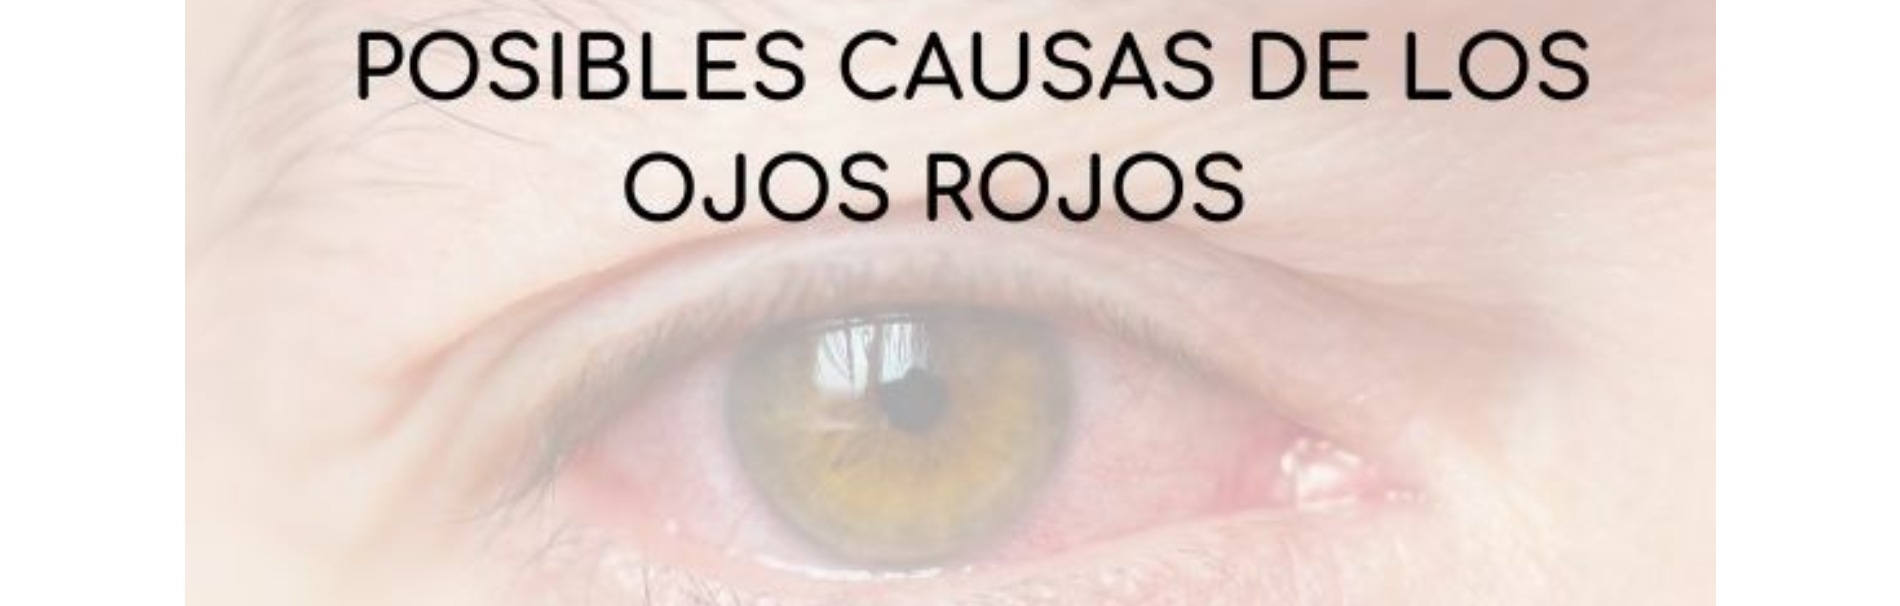 Posibles causas de los ojos rojos